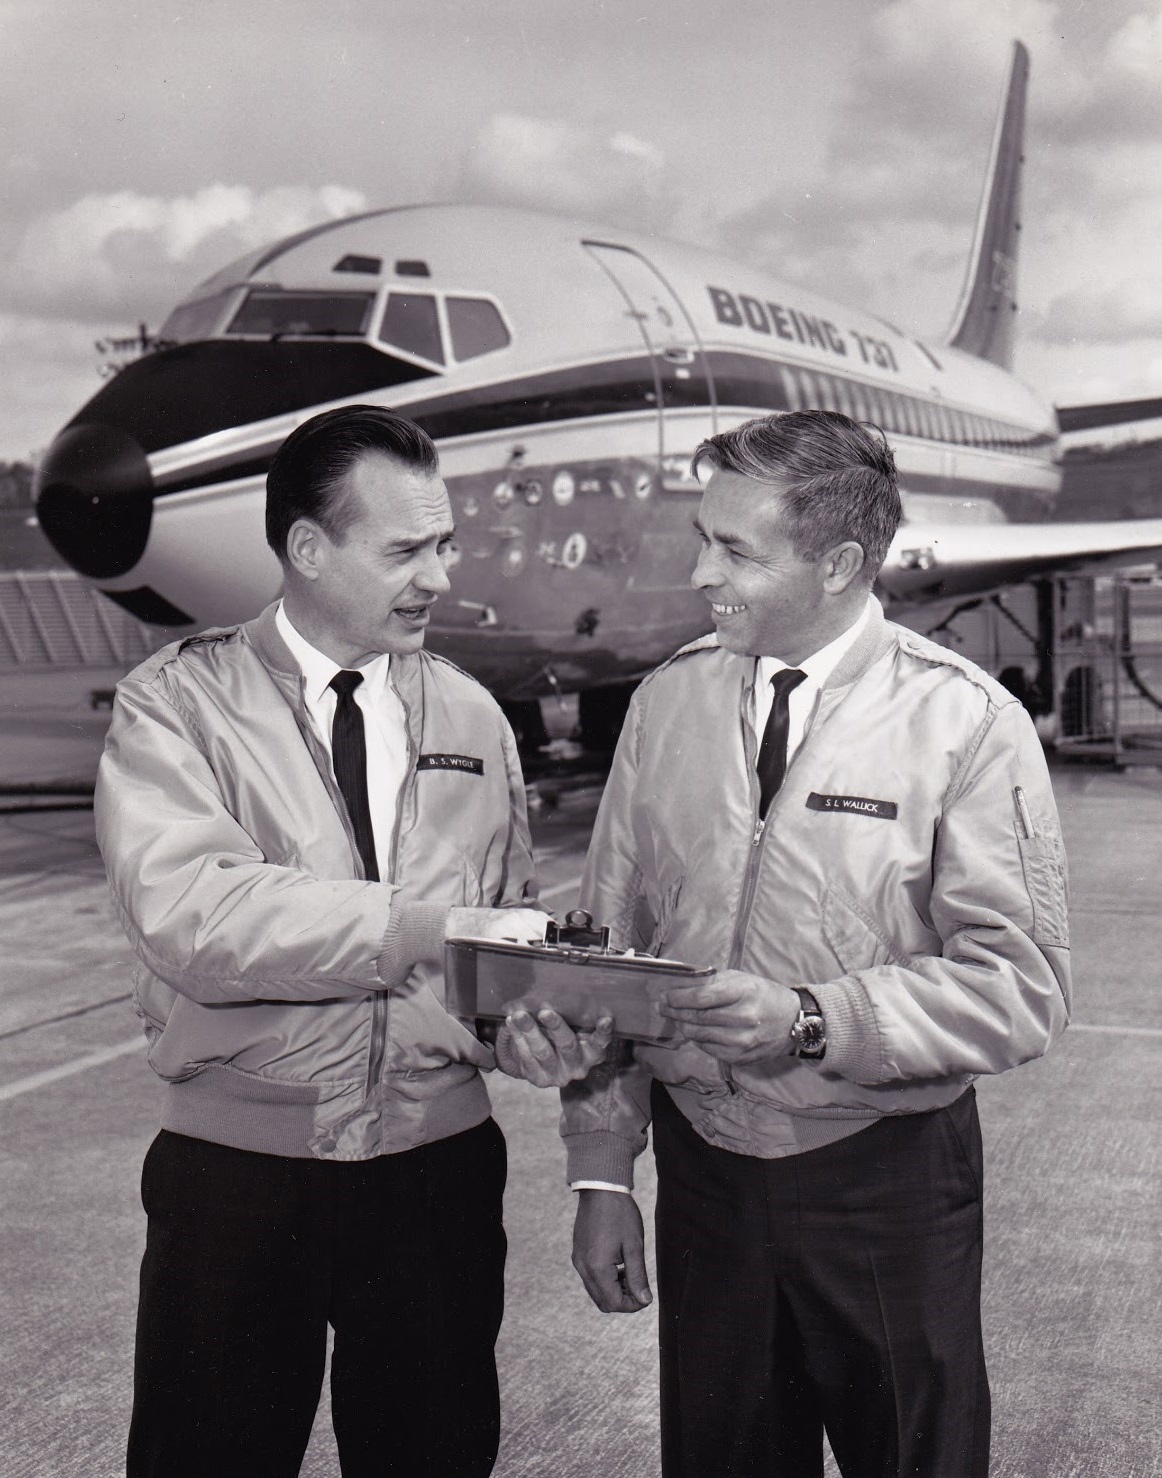 Слева — Брайен Уайгл, тест-пилот фирмы Боинг, по некоторым данным, именно он был одним из двух участников программы сертификации двухчленного экипажа Боинга 737.  